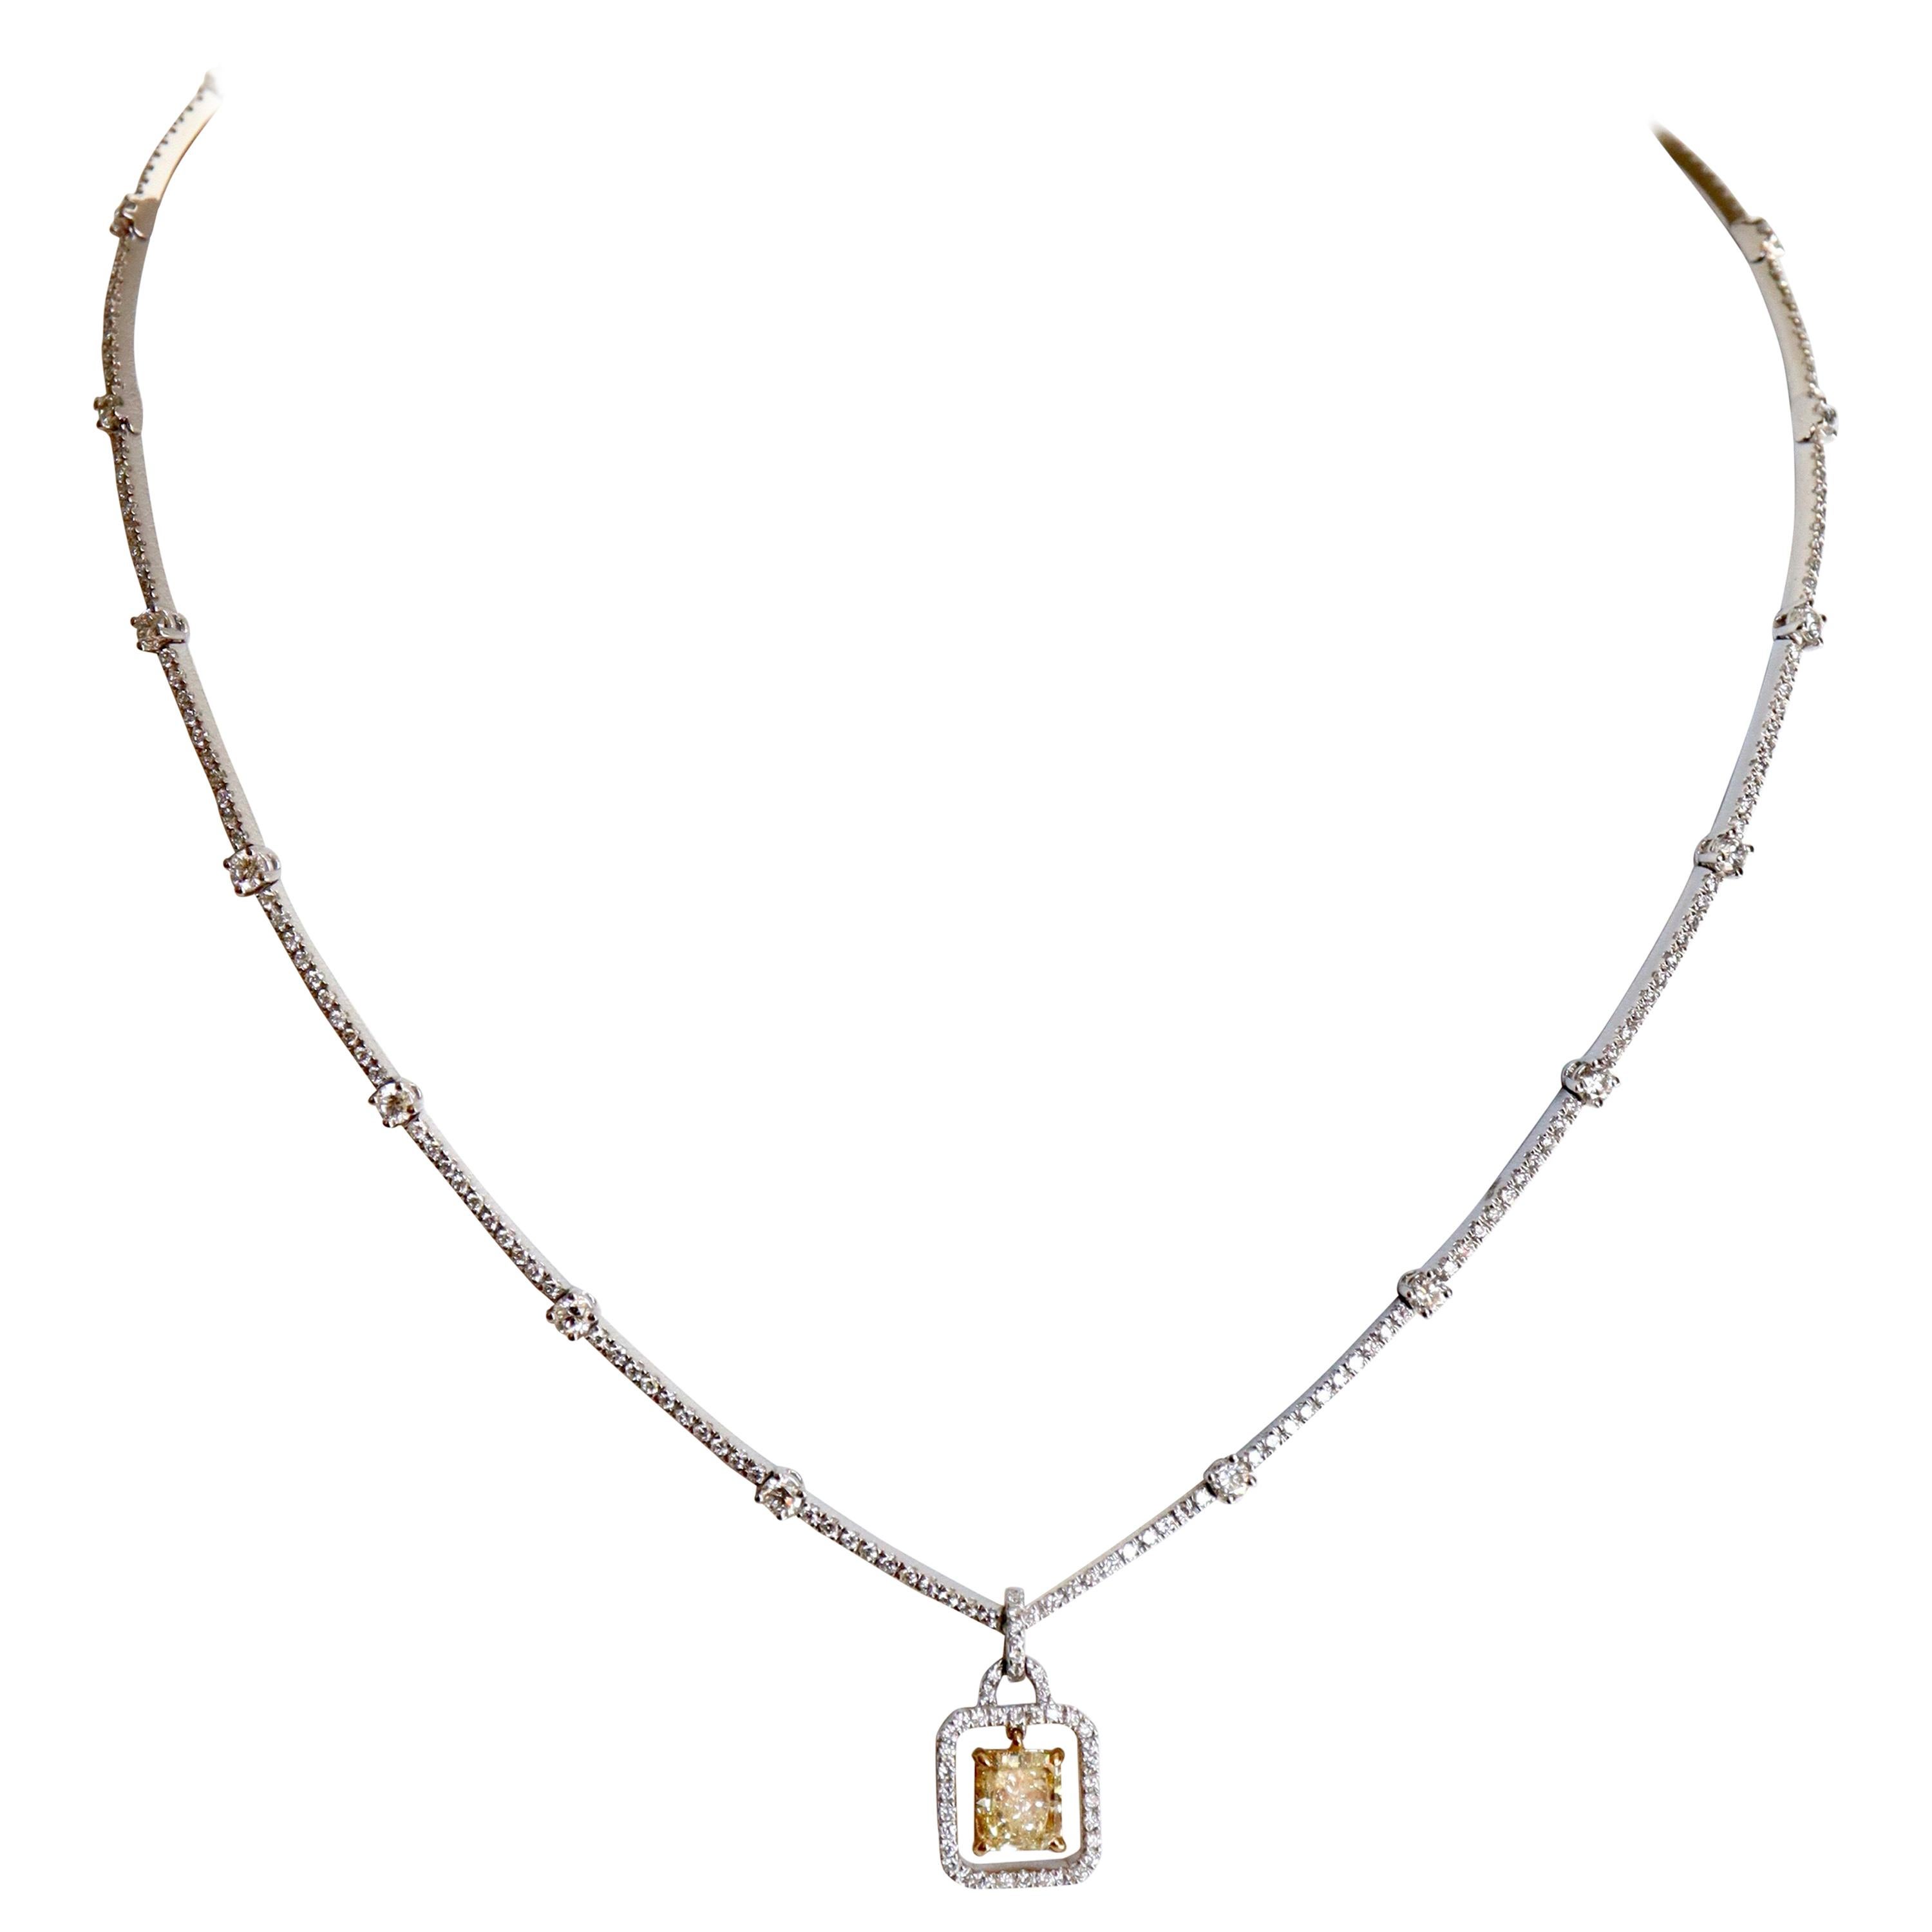 Halskette aus 18 Karat Gold, Platin und Diamanten sowie 1,5 Karat gelben Diamanten